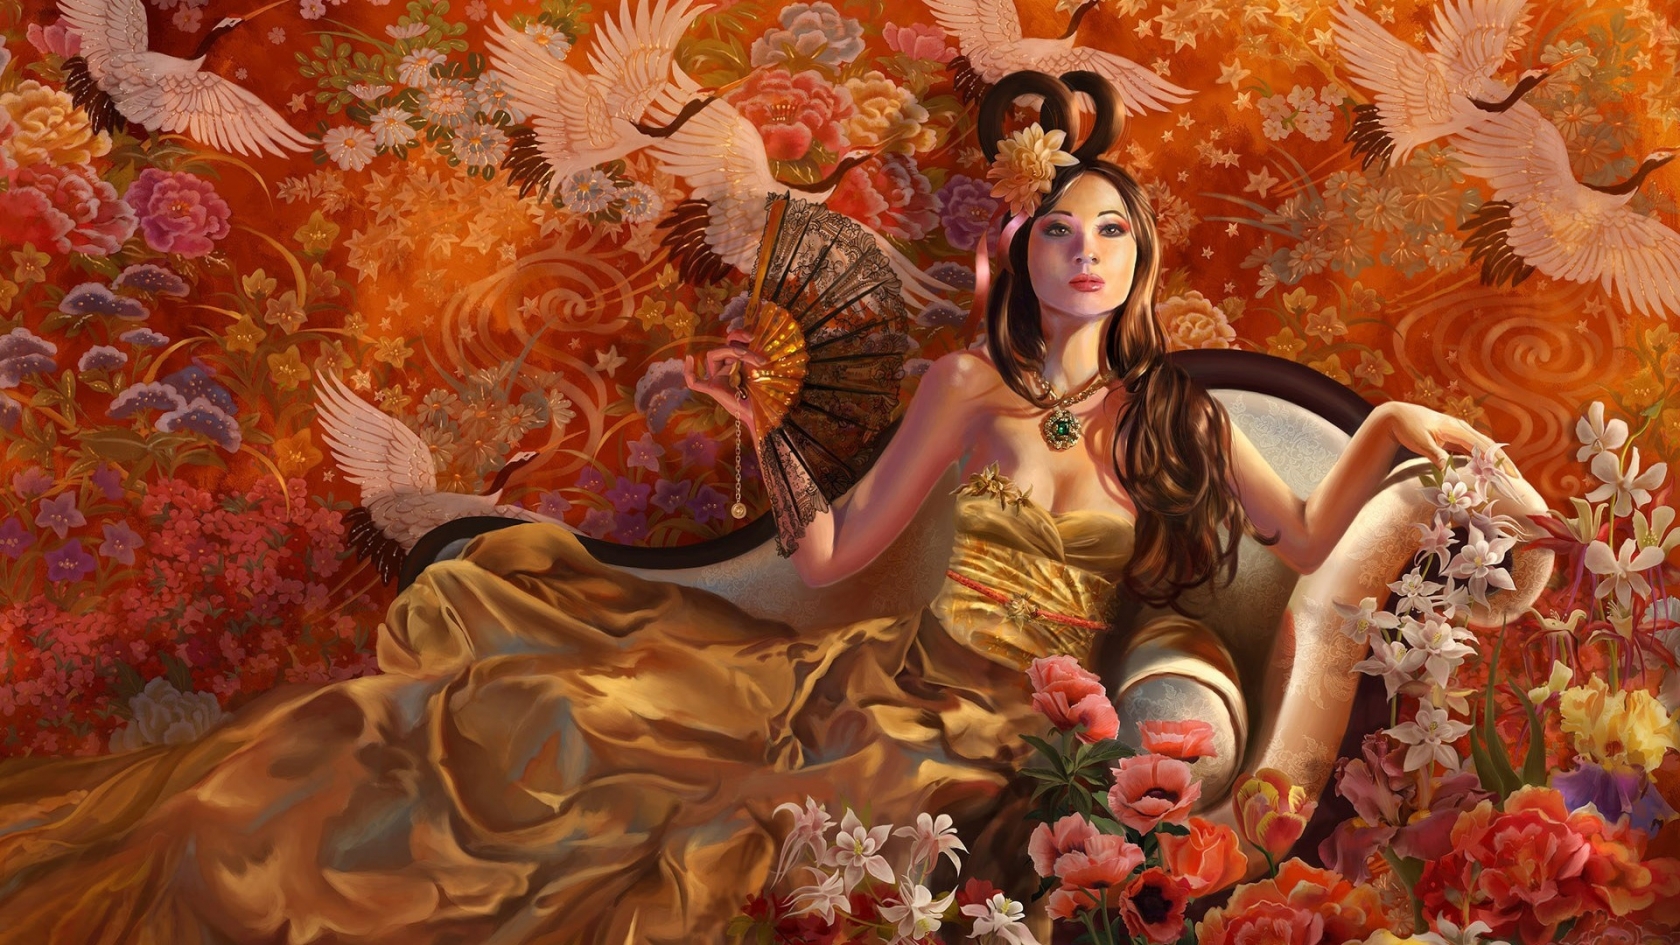 Fantasy Girl Autumn for 1680 x 945 HDTV resolution